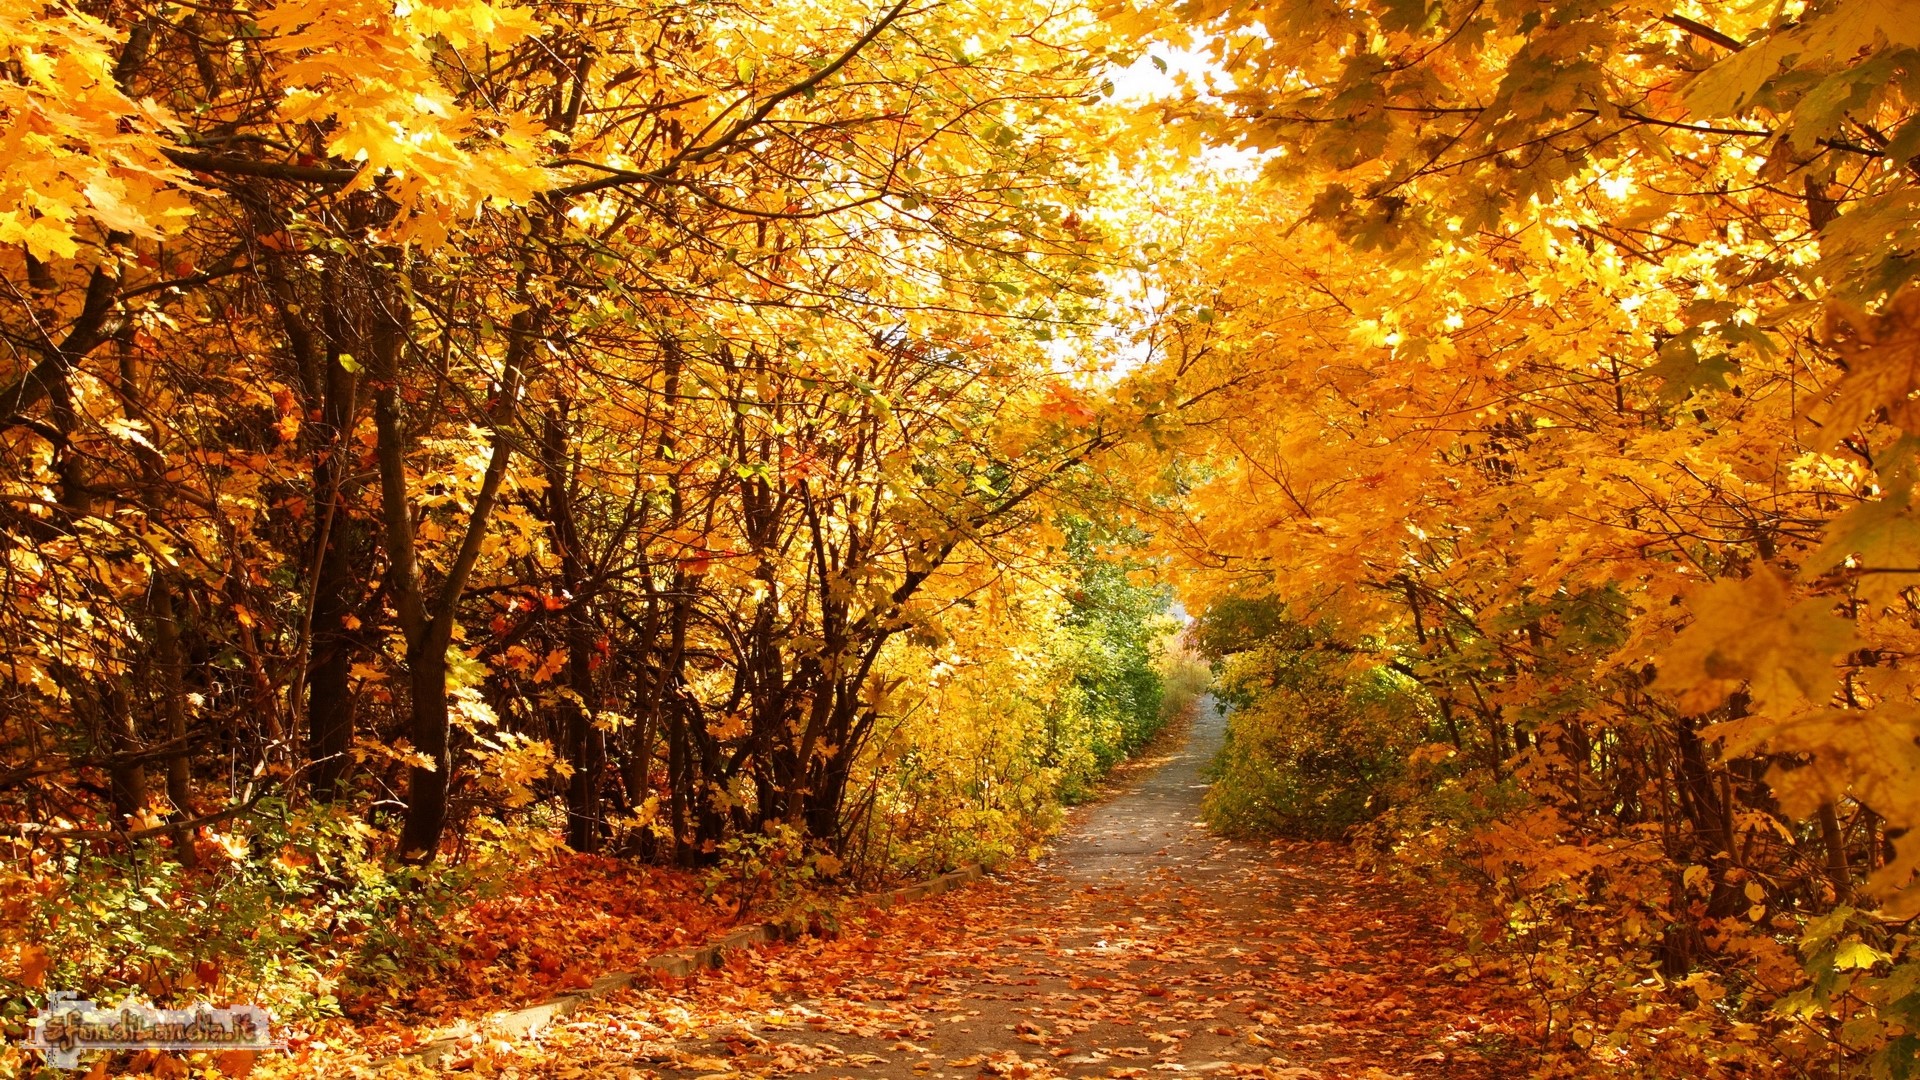 Sfondo gratis di autunno colorato per for Foto autunno per desktop gratis